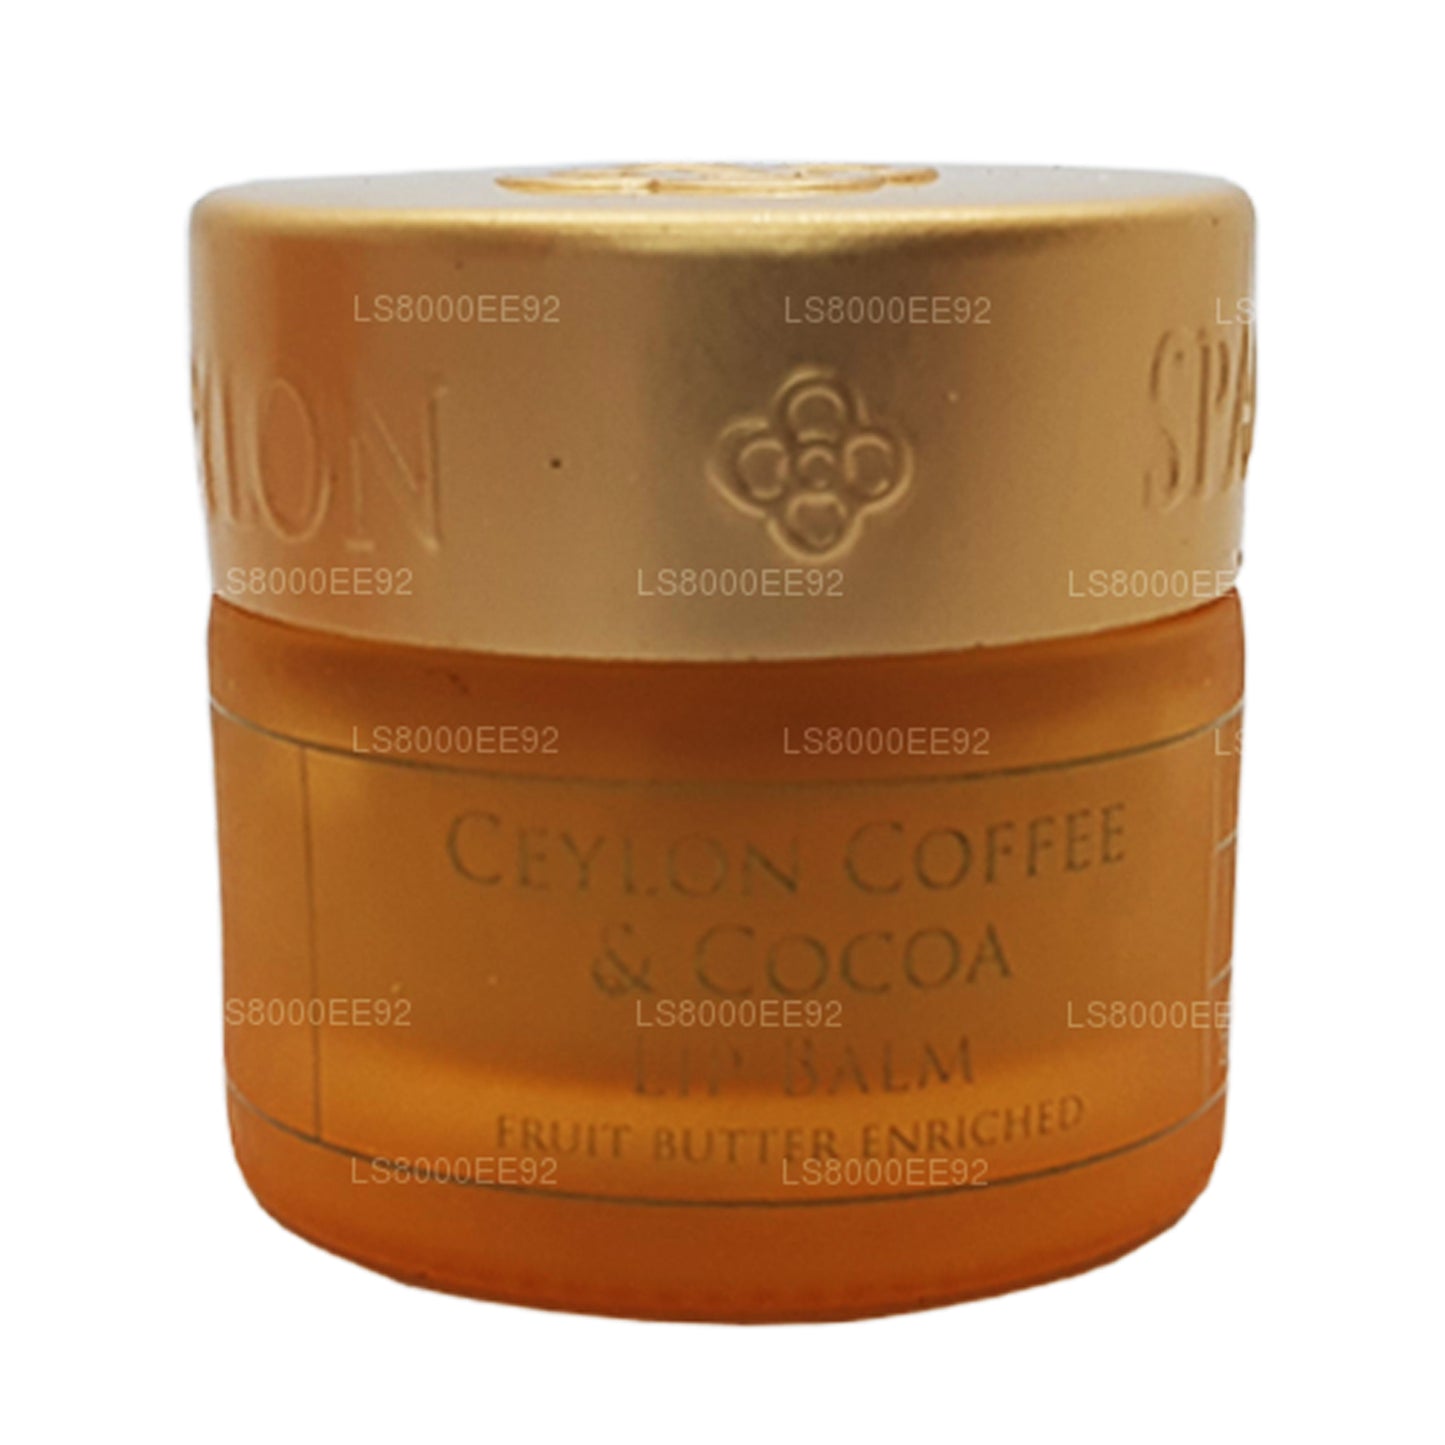 Spa Ceylon Ceylon Kaffe og kakao læbepomade (10g)